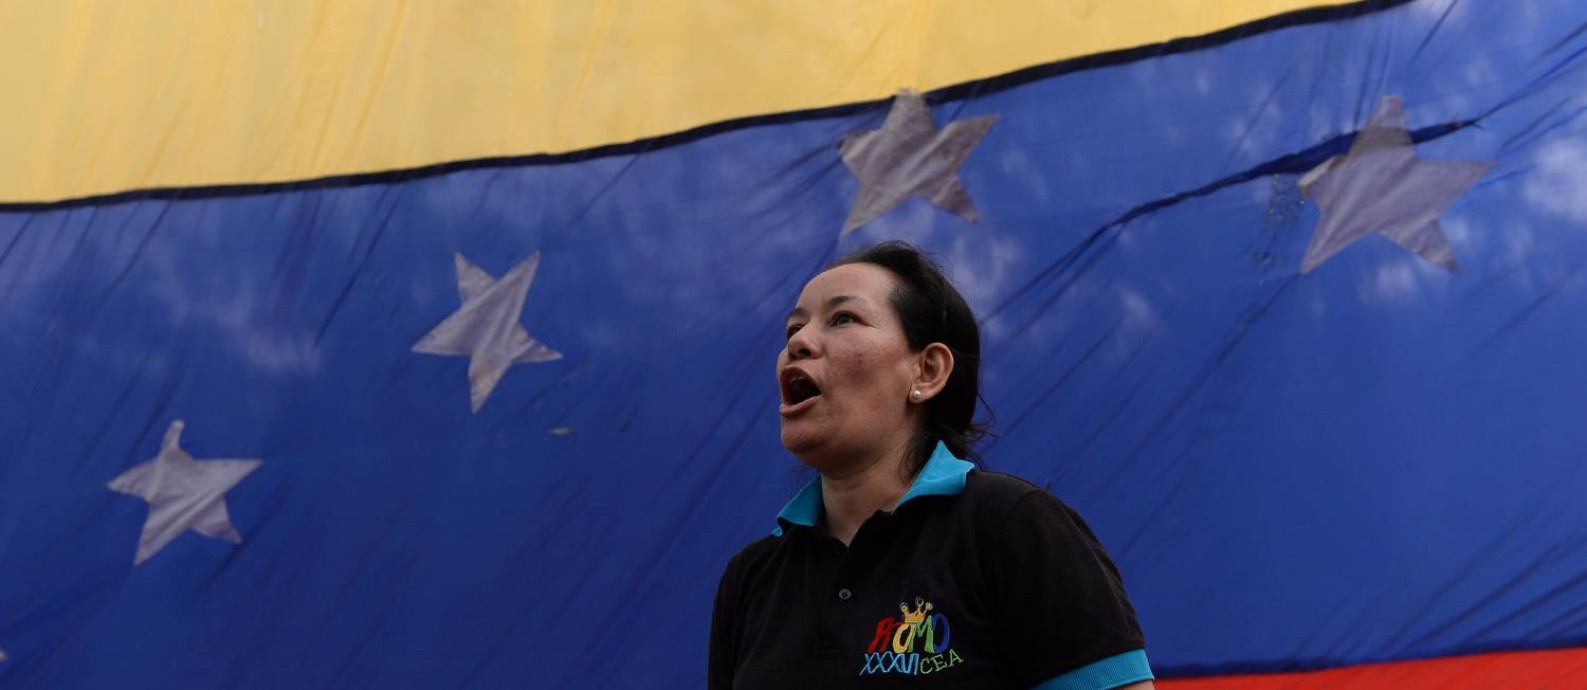 Mulher em frente à bandeira da Venezuela durante manifestação em Caracas; clima político é tenso no país sul-americano Foto: FEDERICO PARRA / AFP